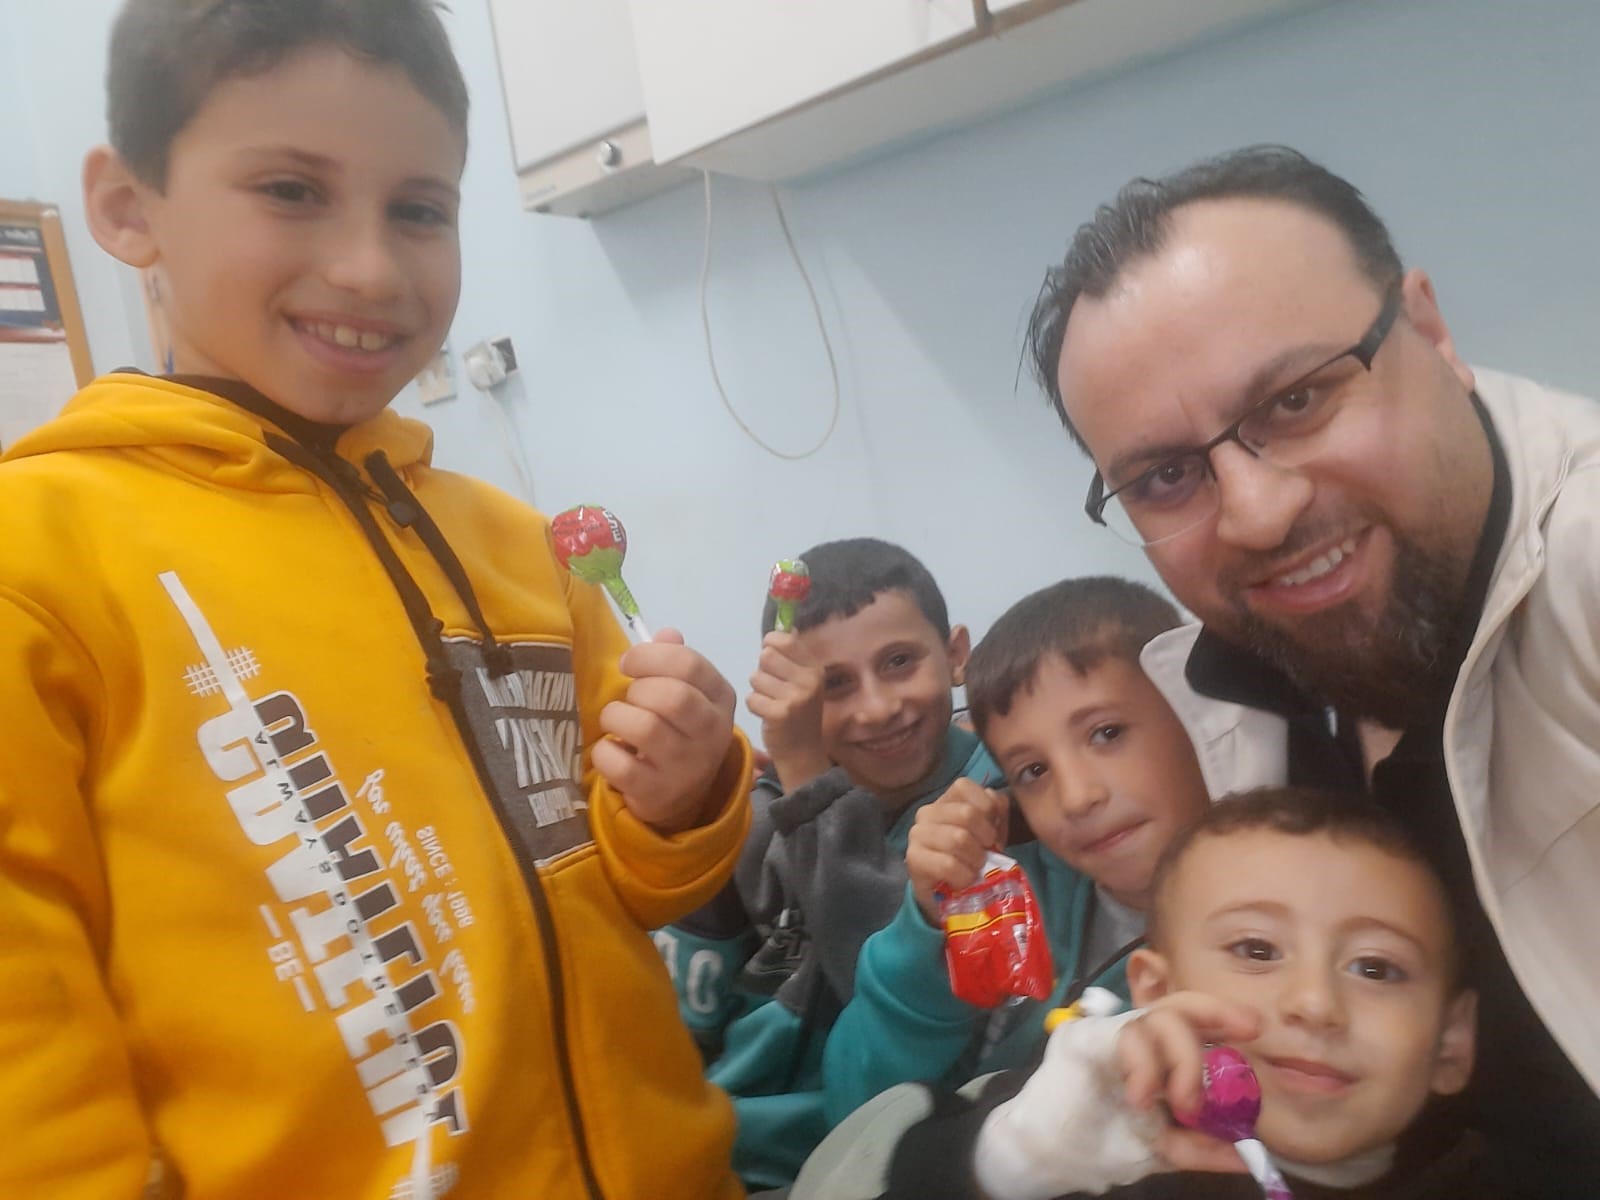 Gazze’de gönüllü doktorluk yapan Kamacı, yaşanan dramı anlattı